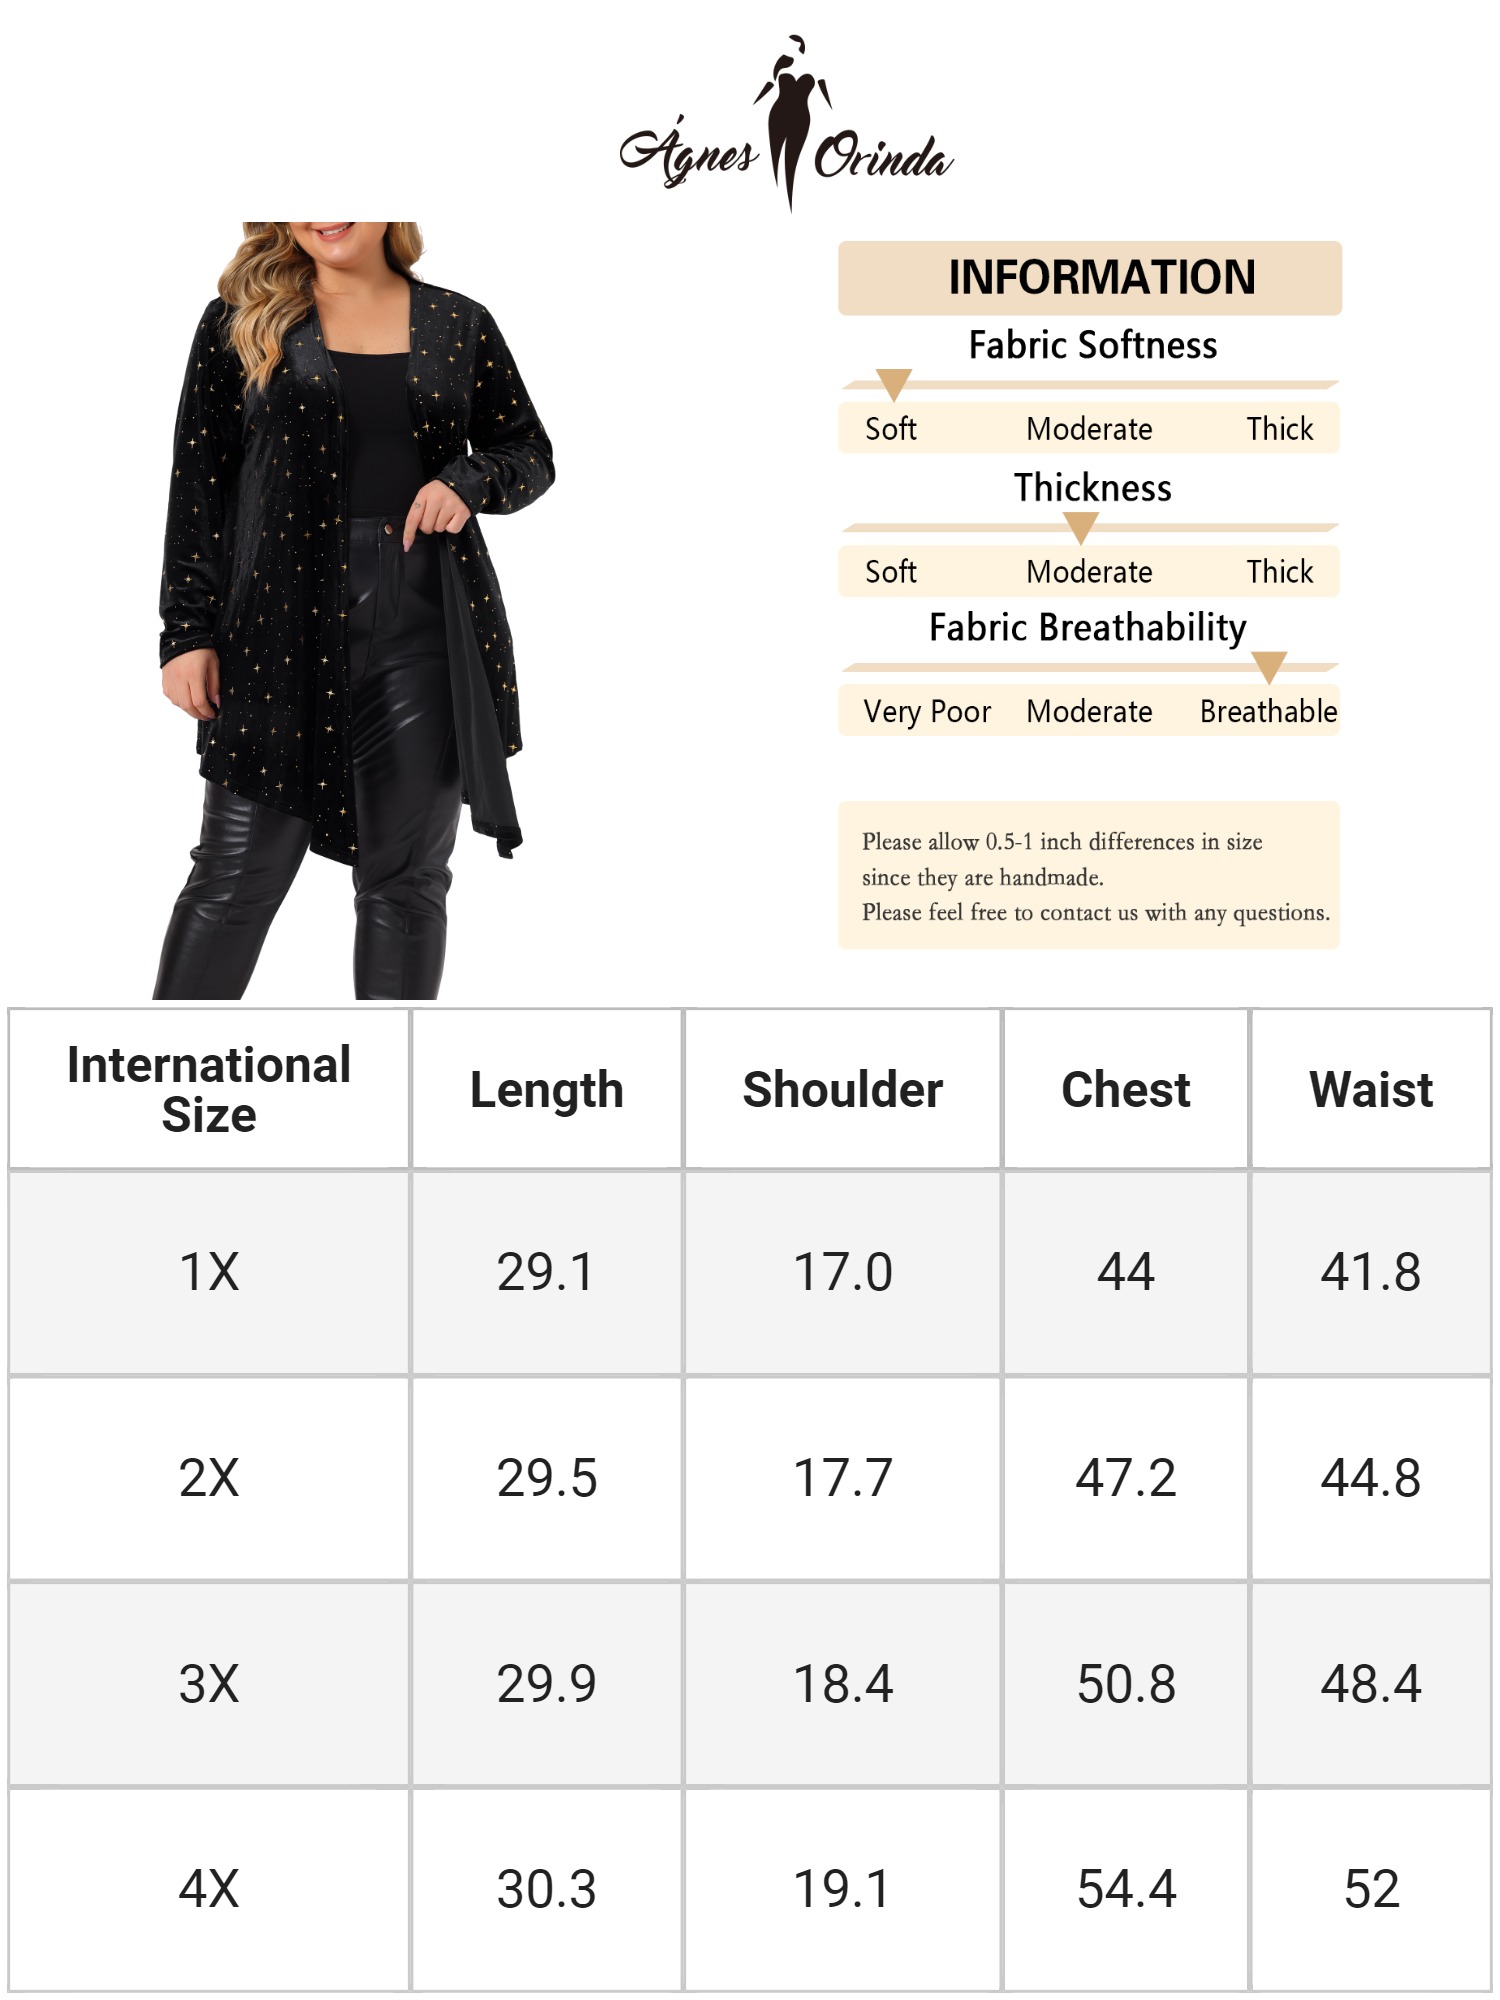 Unique Bargains Agnes Orinda Plus Size Elegant Cardigan for Women 3/4 Sleeve Star Print Shrug Top